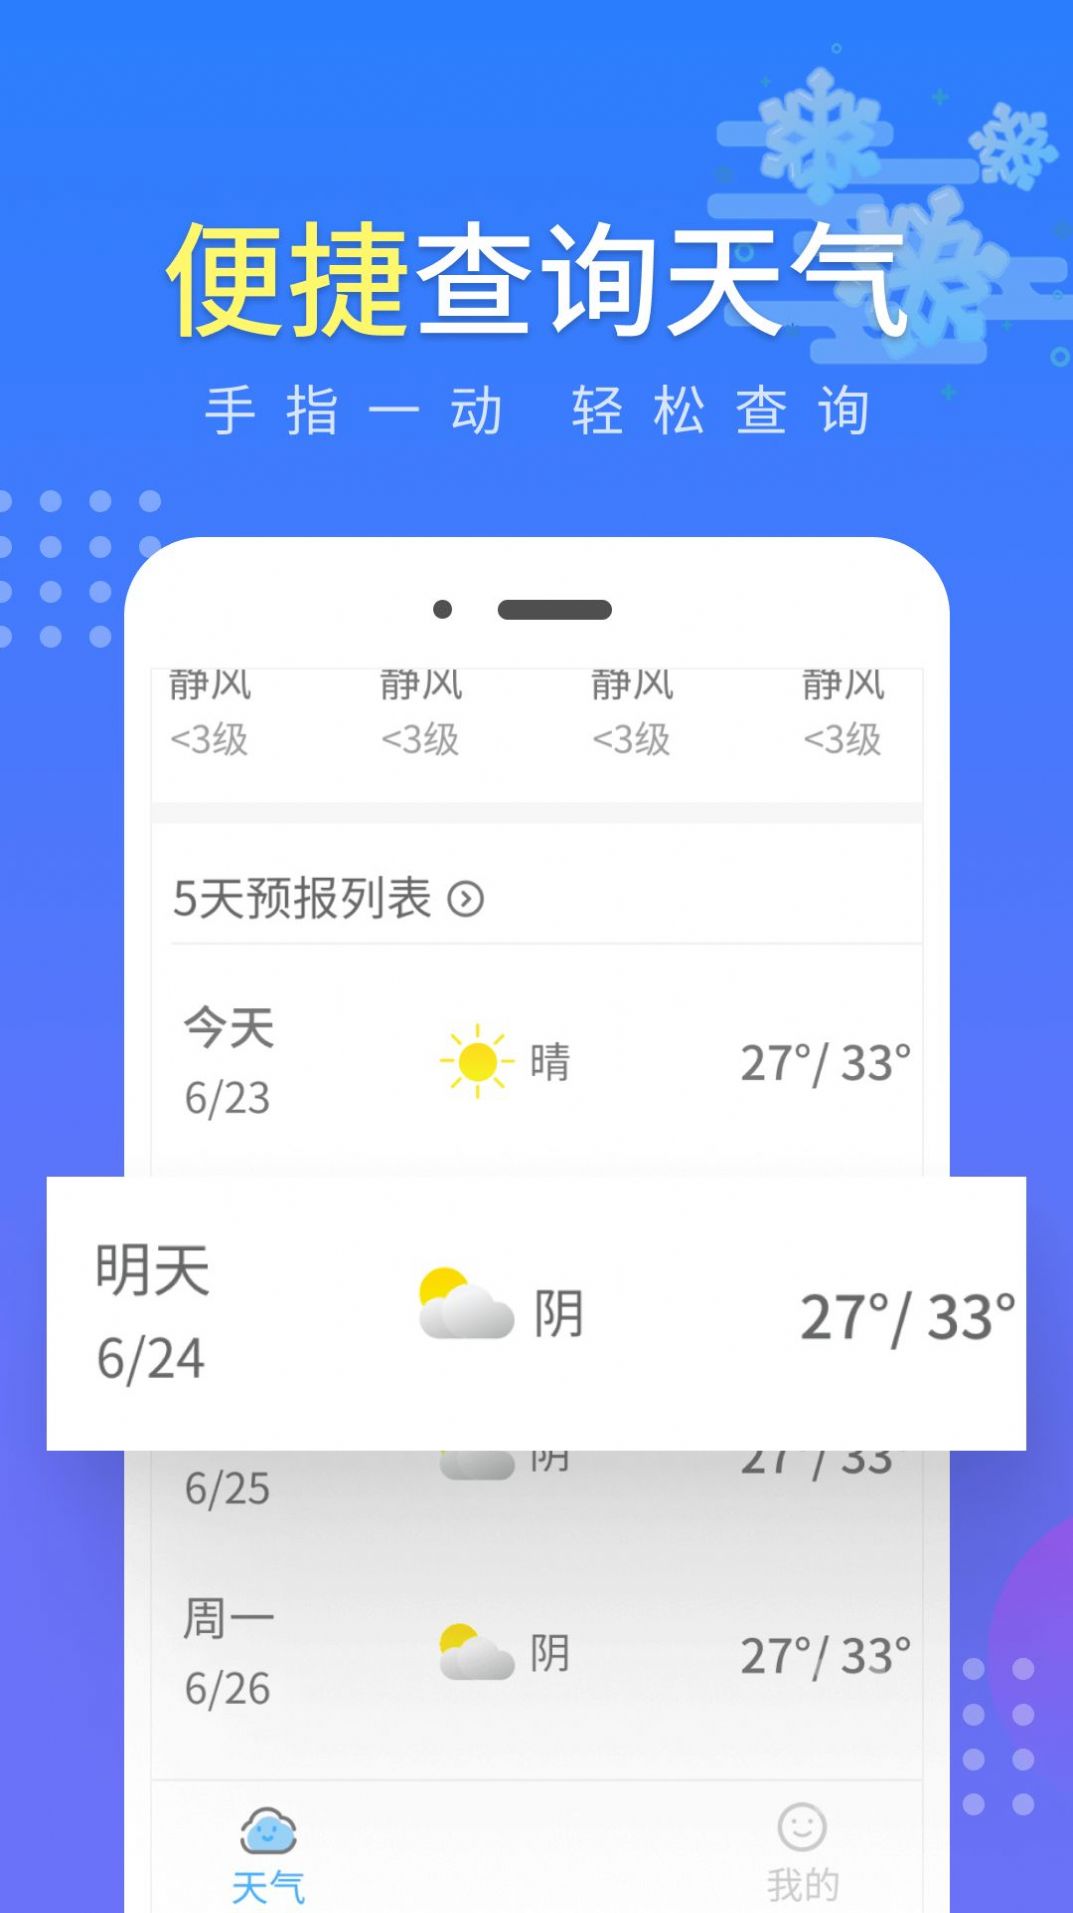 晴朗气象通app安卓版下载-晴朗气象通便捷天气预报服务平台下载v1.0.1